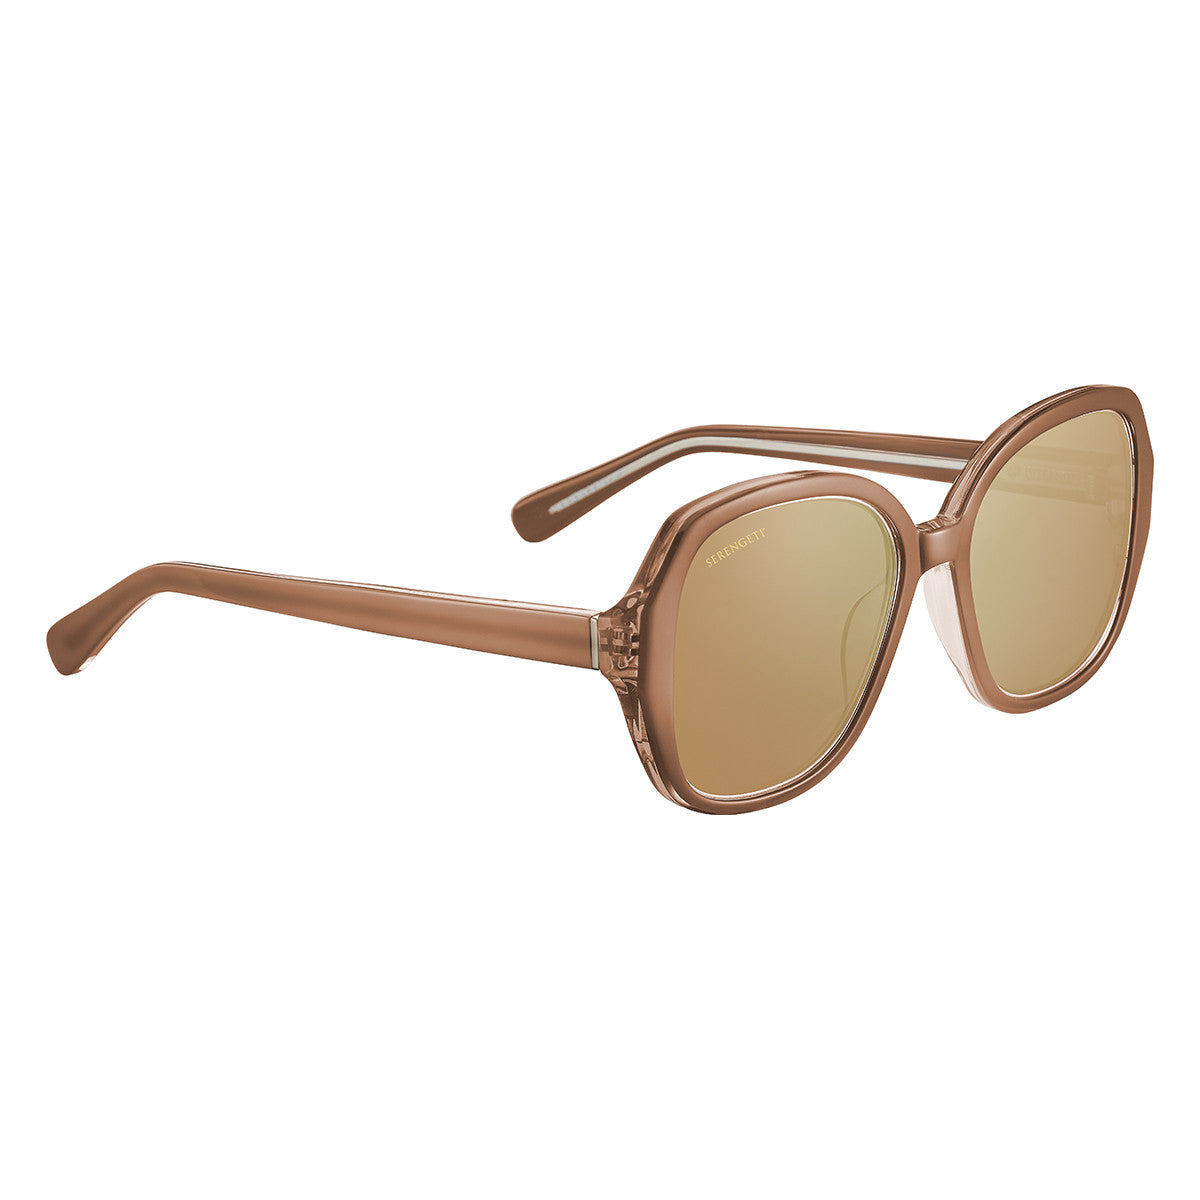 Serengeti Hayworth Sunglasses  Shiny Crystal Sand Beige Small, Medium